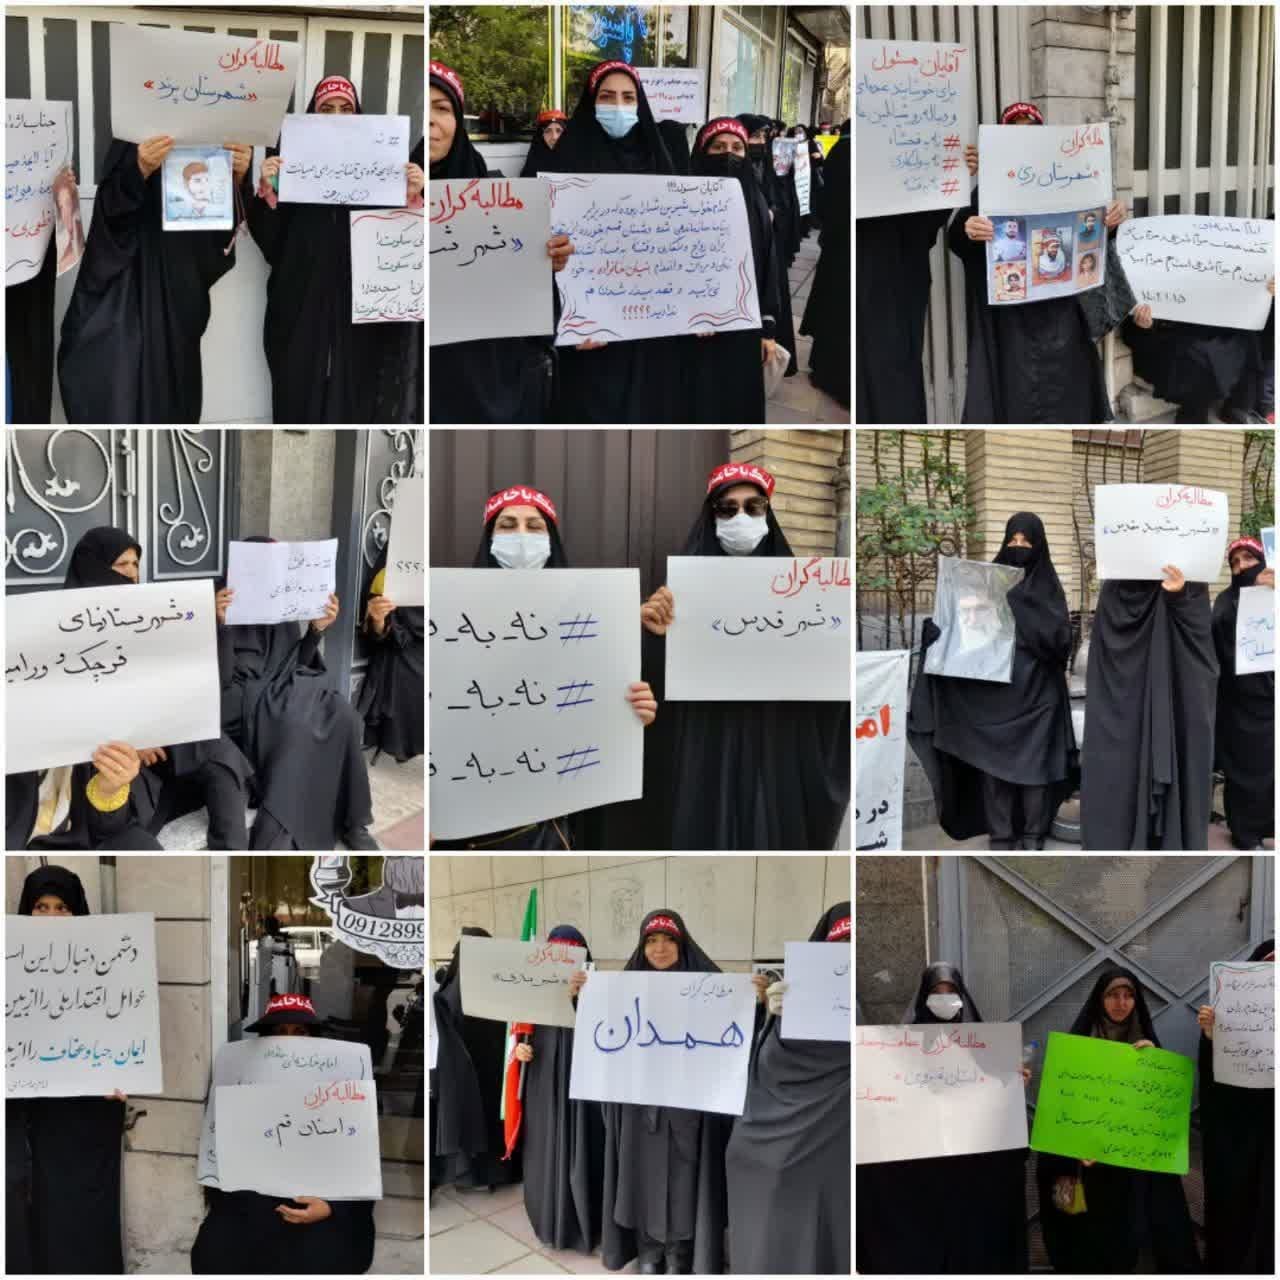 اجتماع بانوان شهرهای مختلف در اعتراض به ایرادات لایحه عفاف و حجاب